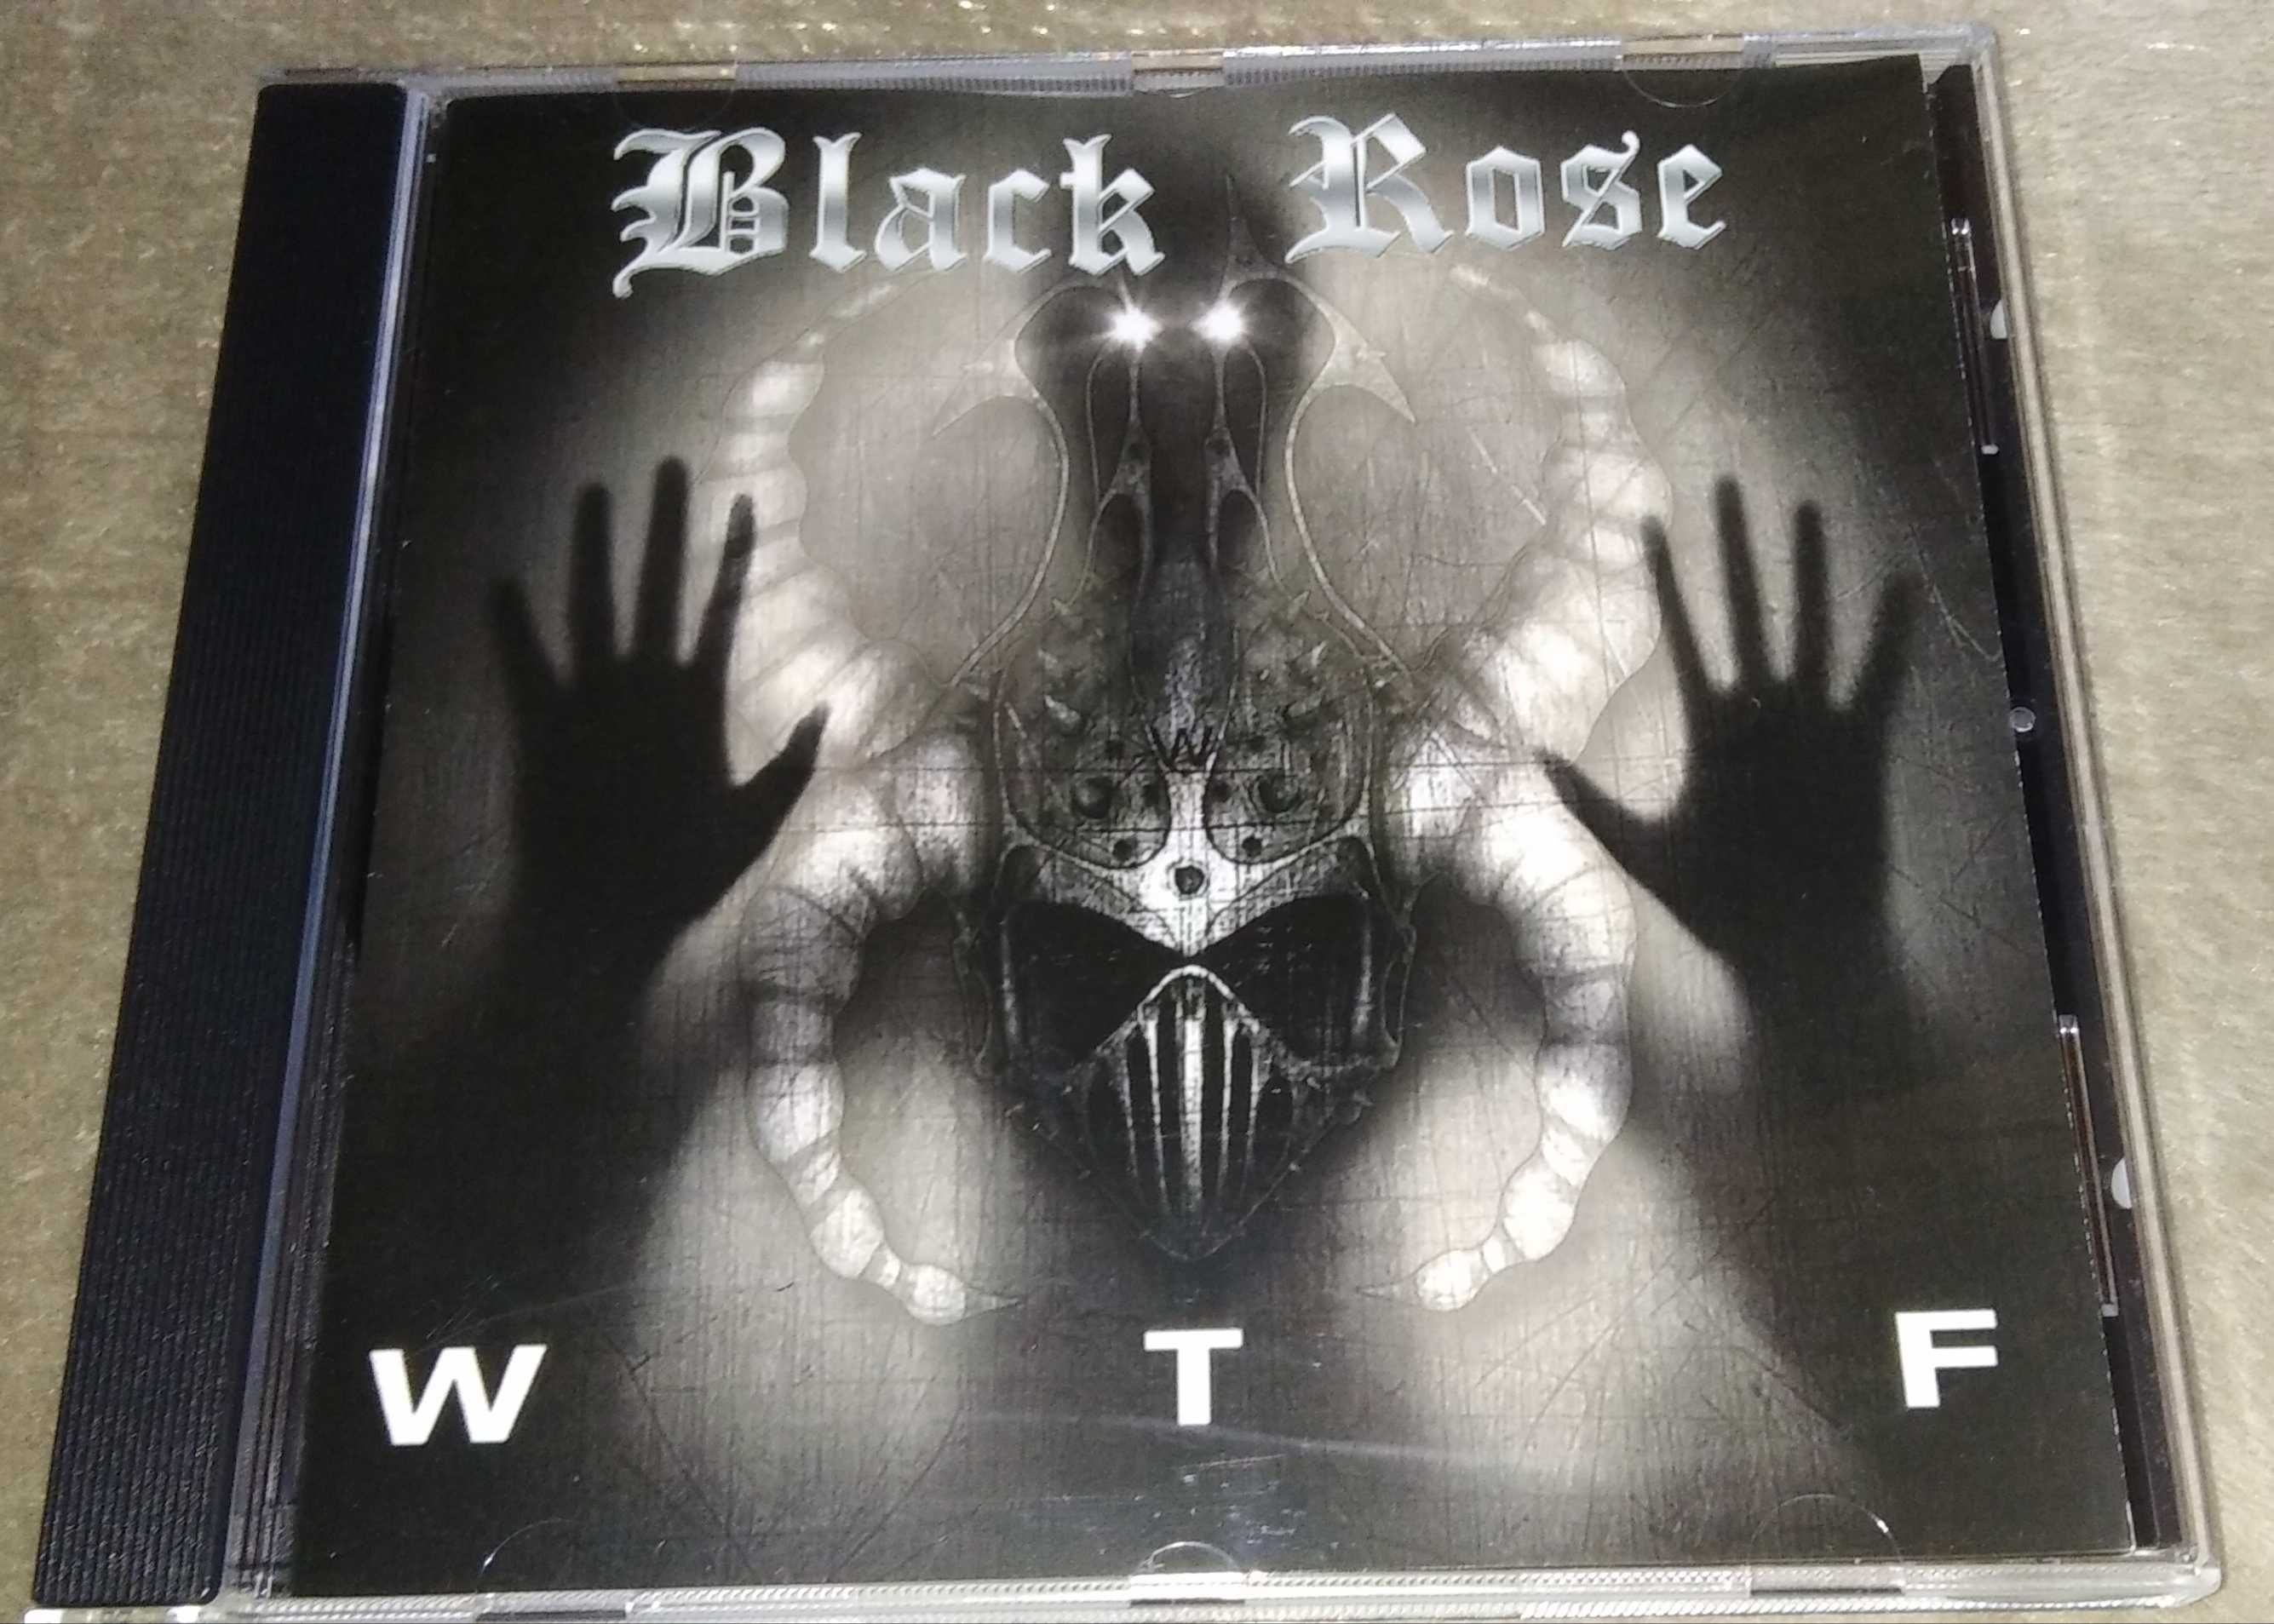 Black Rose - WTF (NWOBHM) CD novo